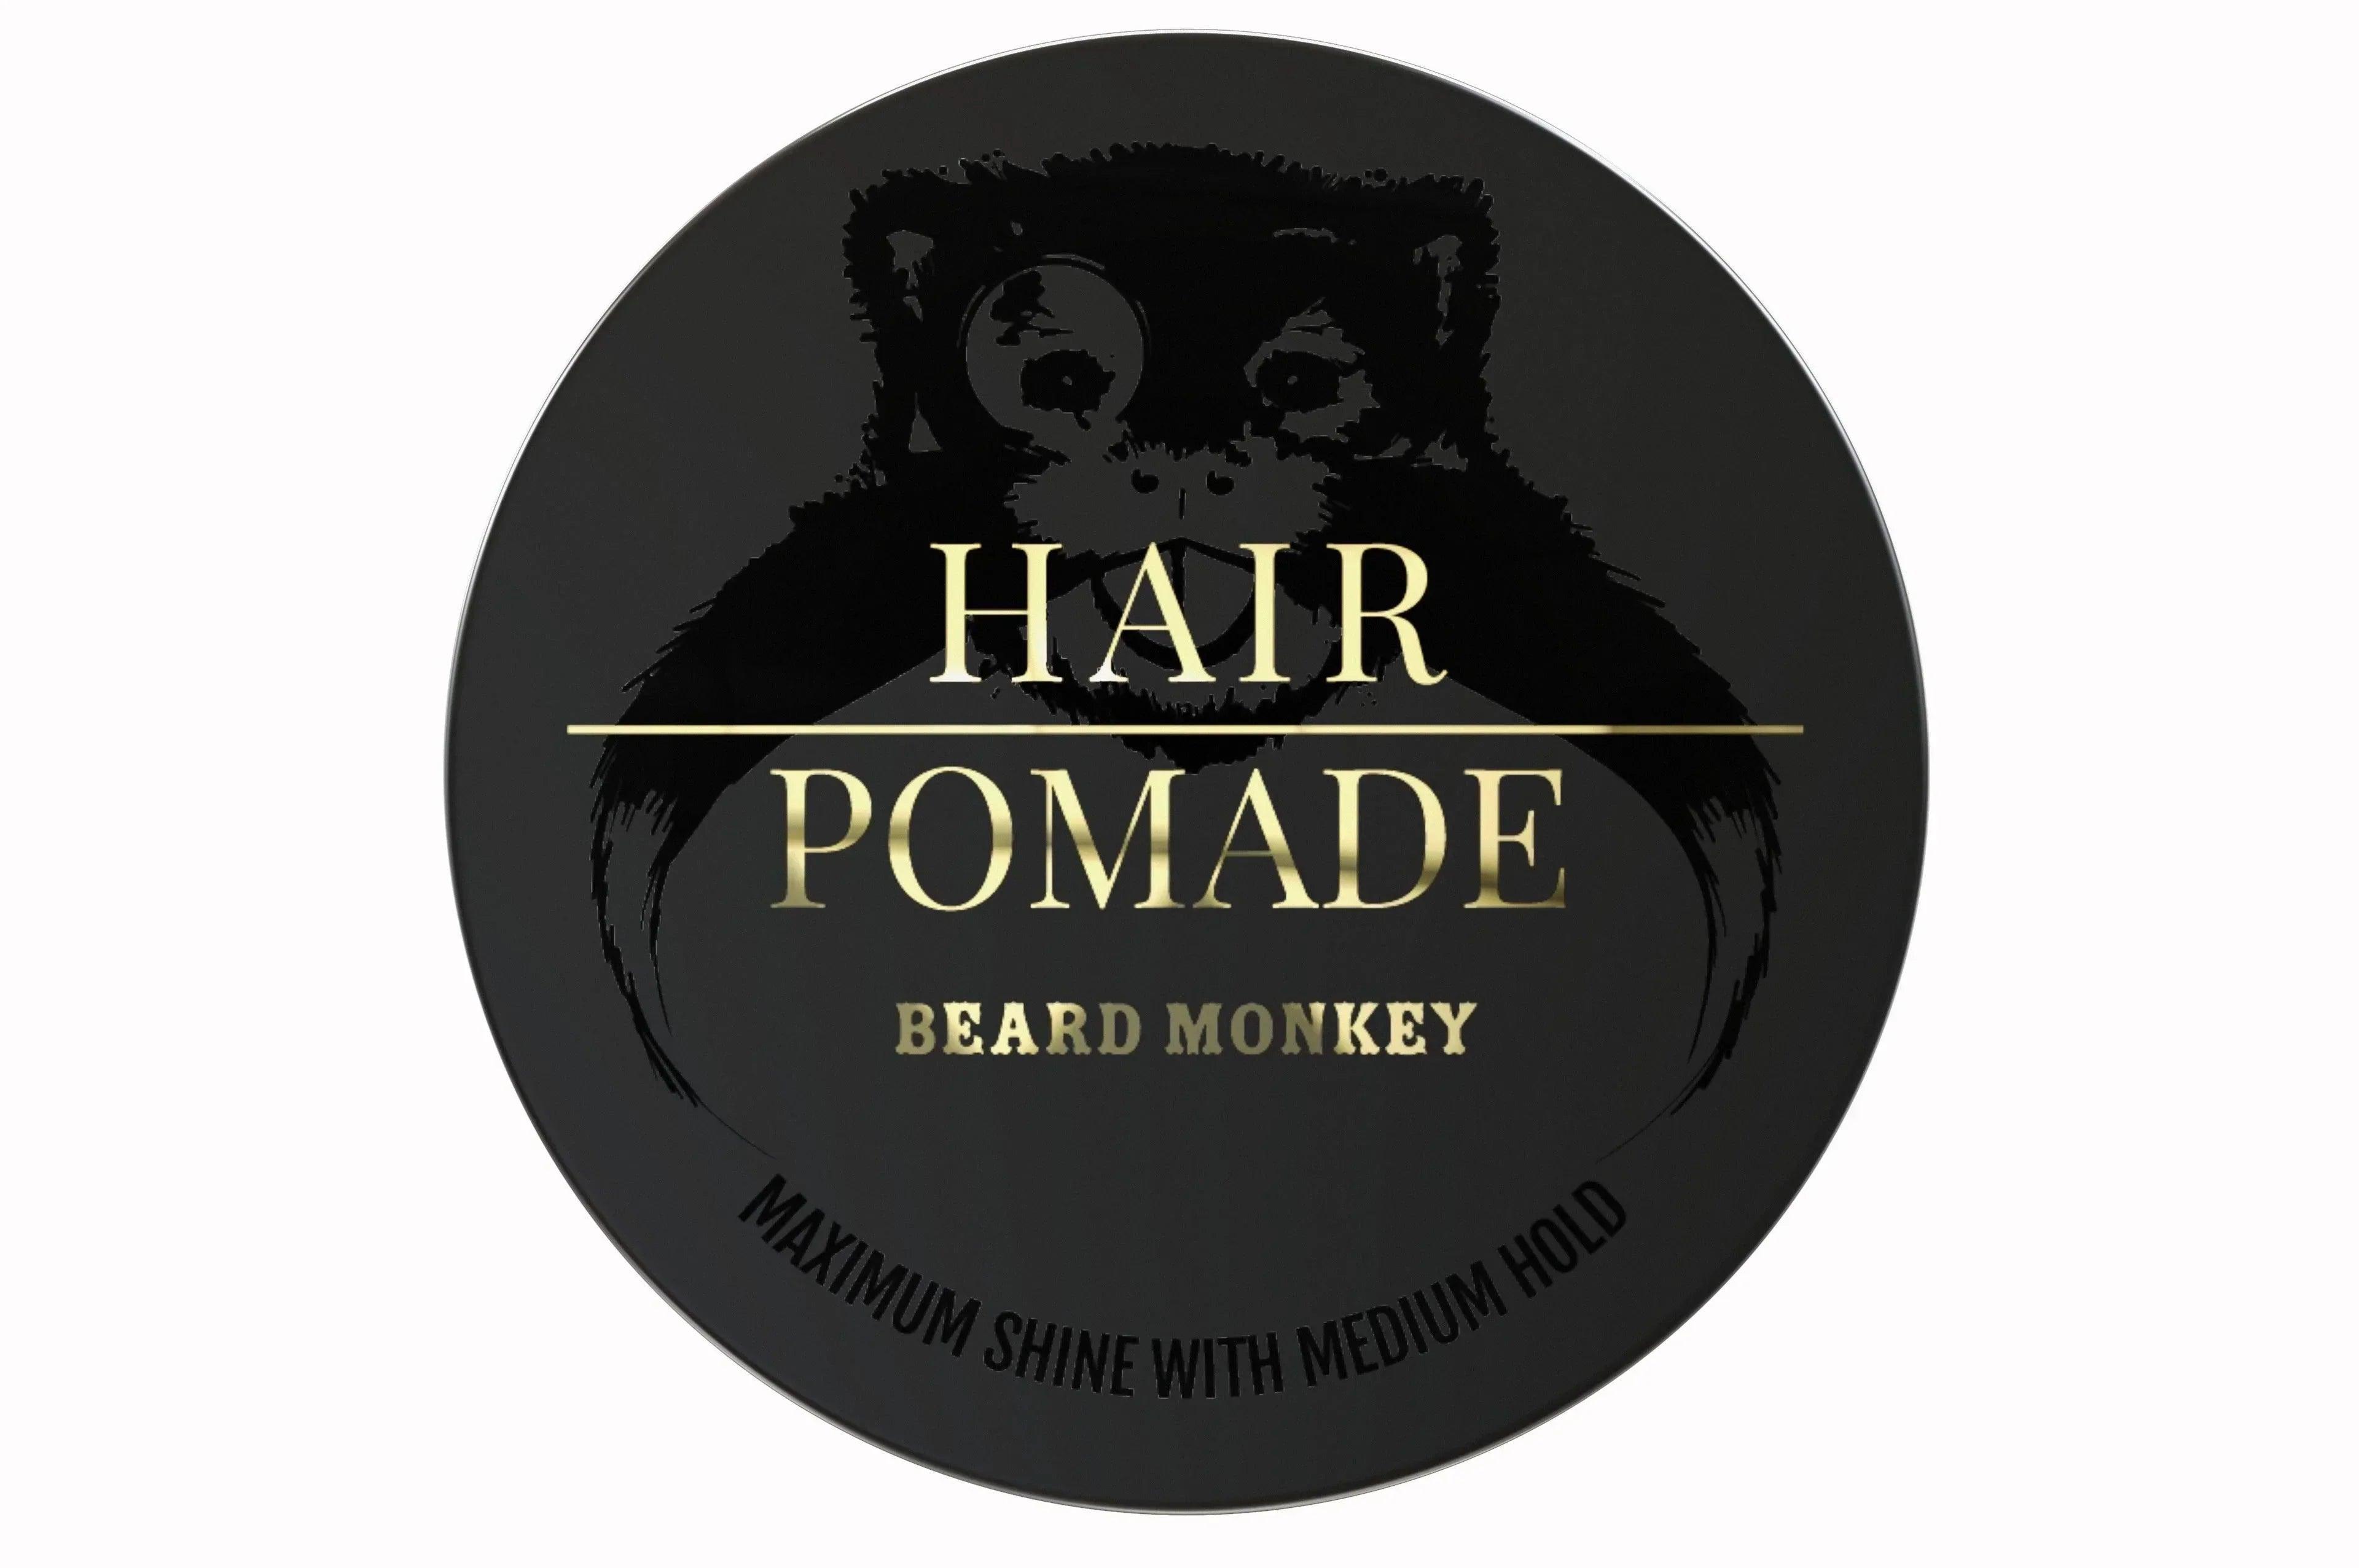 Beard Monkey Hair Pomade | Pomade | Beard Monkey | JK SHOP | JK Barber og herre frisør | Lavepriser | Best